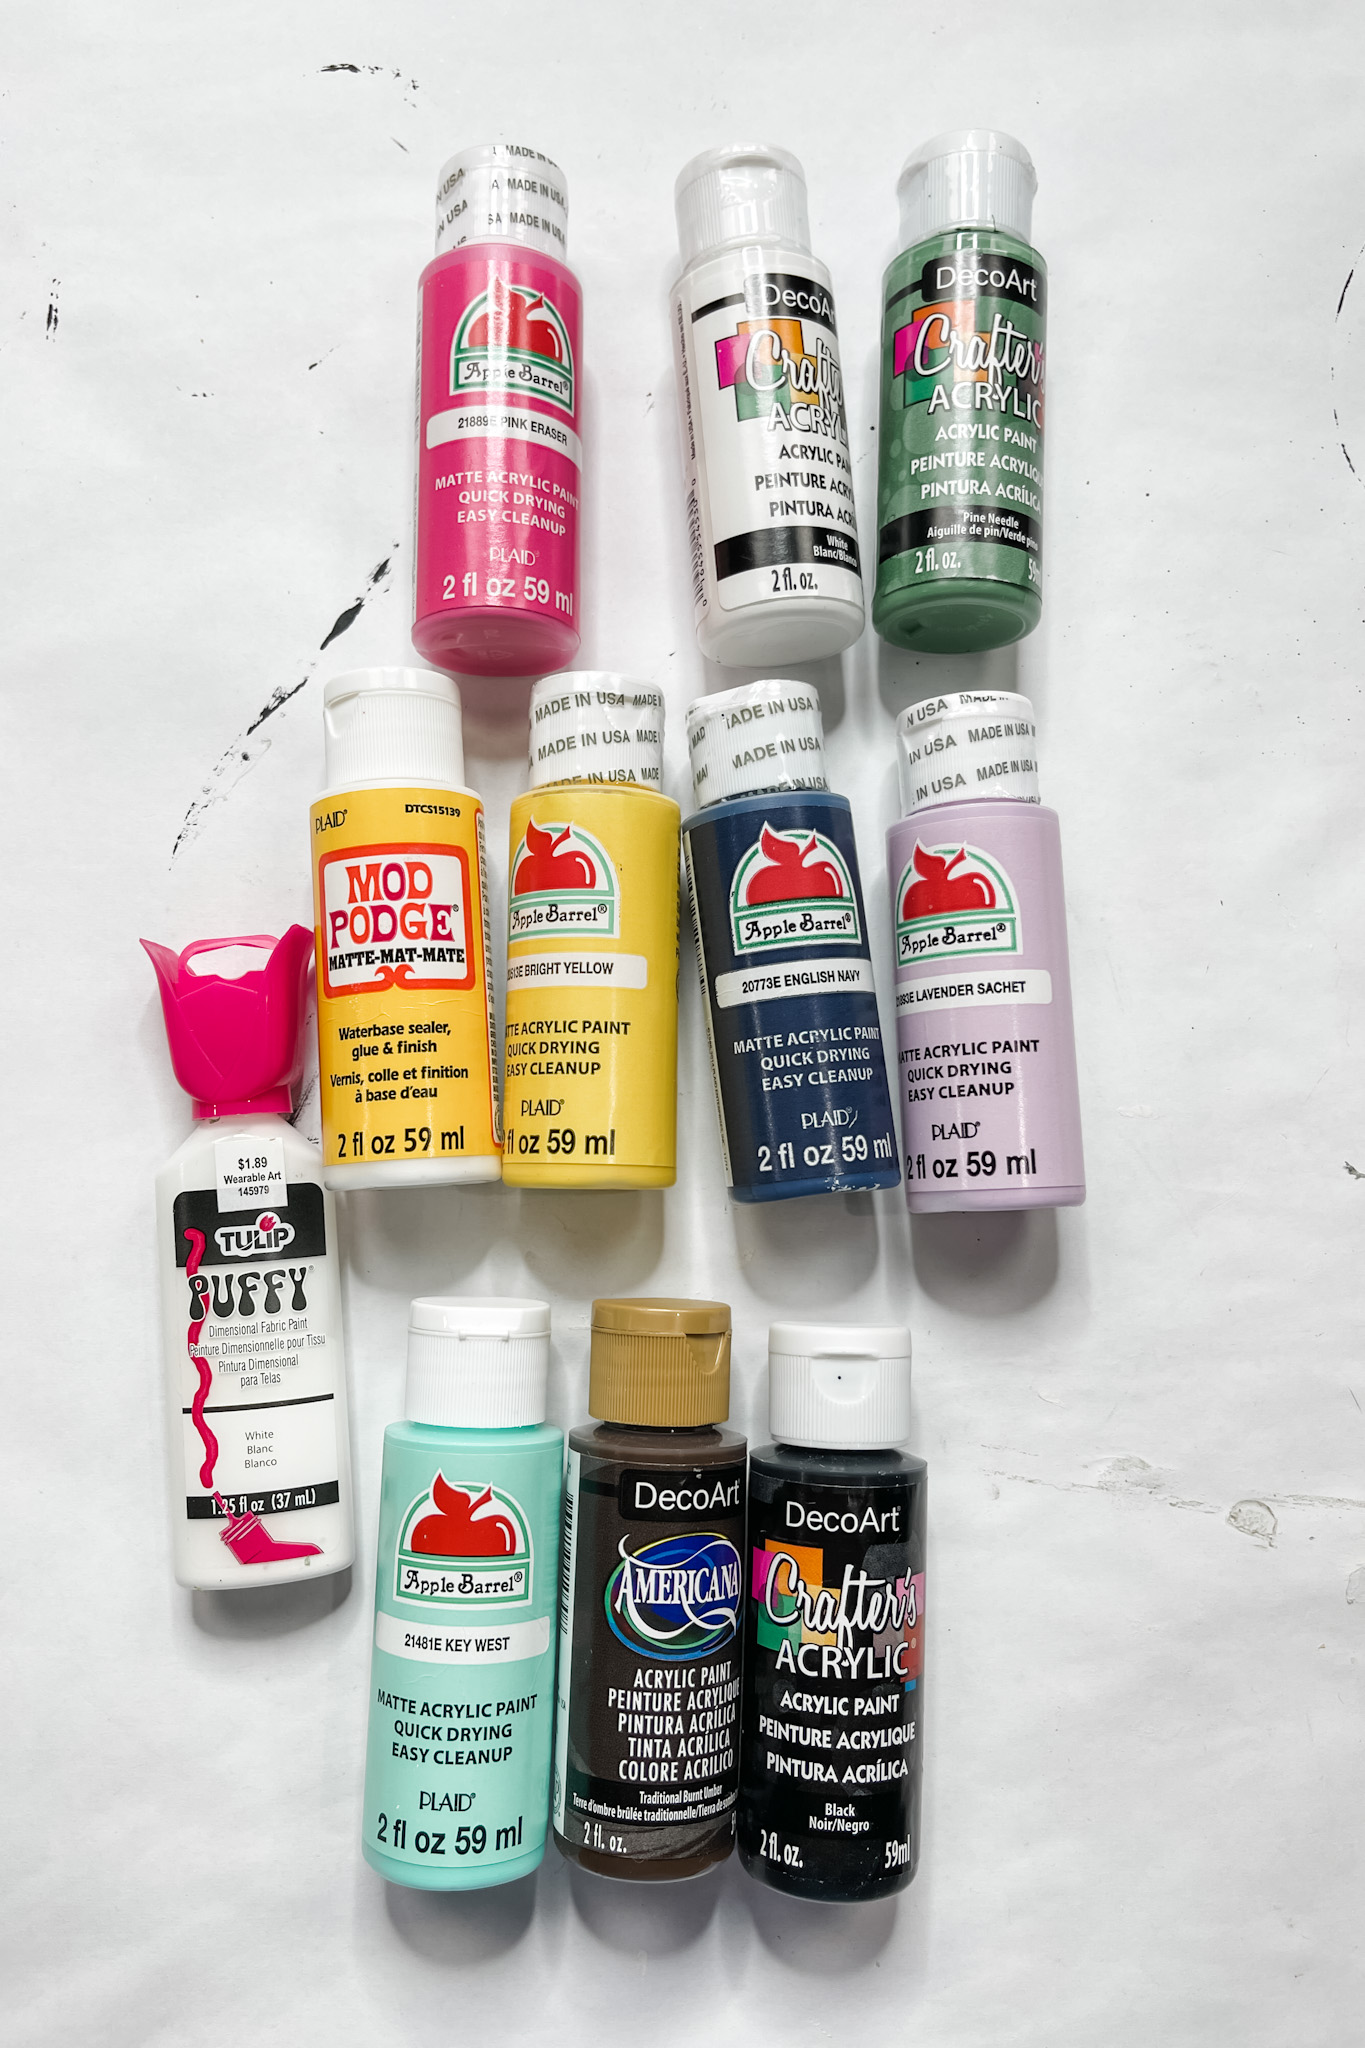 decoart paint colors for birdhouse
